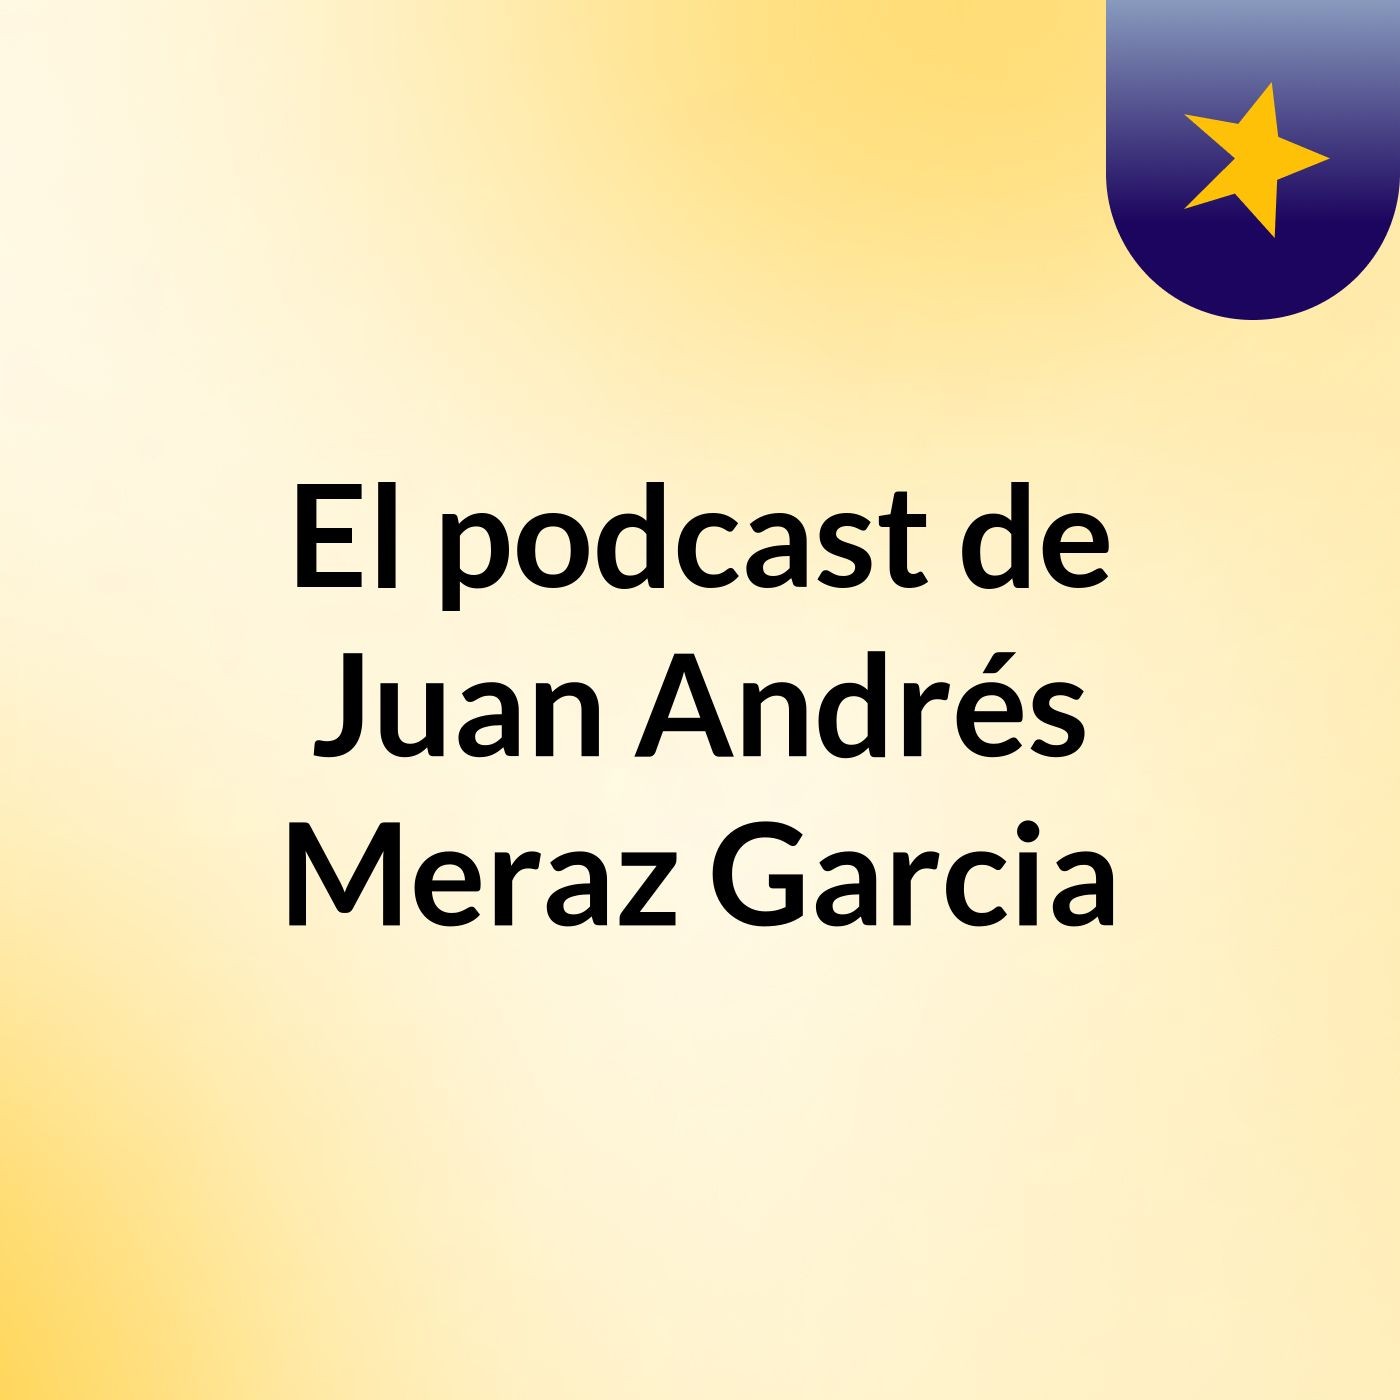 El podcast de Juan Andrés Meraz Garcia